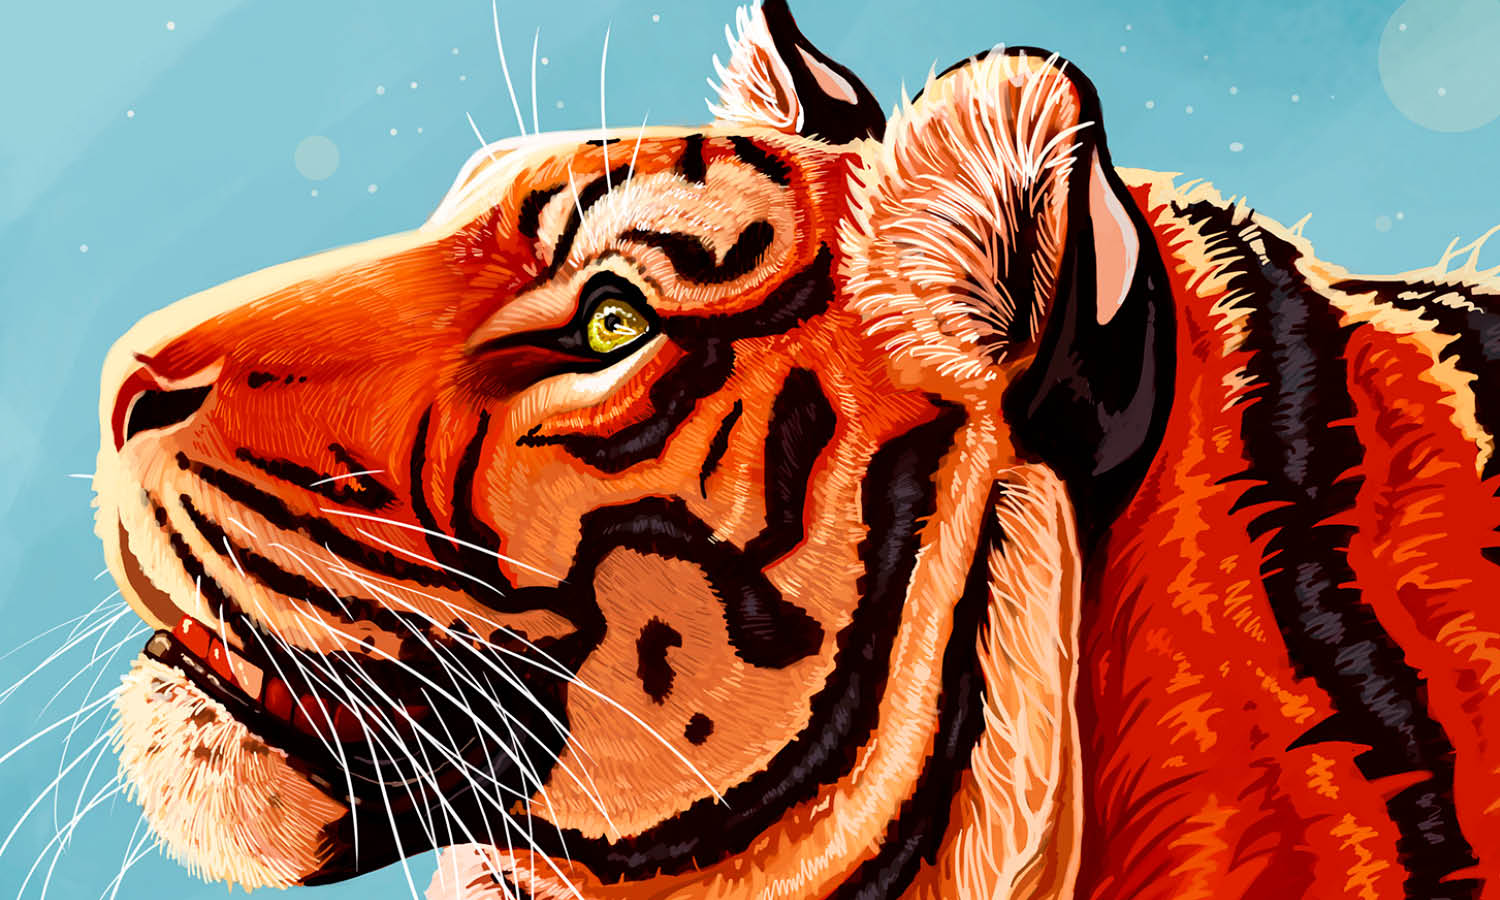 30 Best Tiger Illustration Ideas You Should Check - Kreafolk